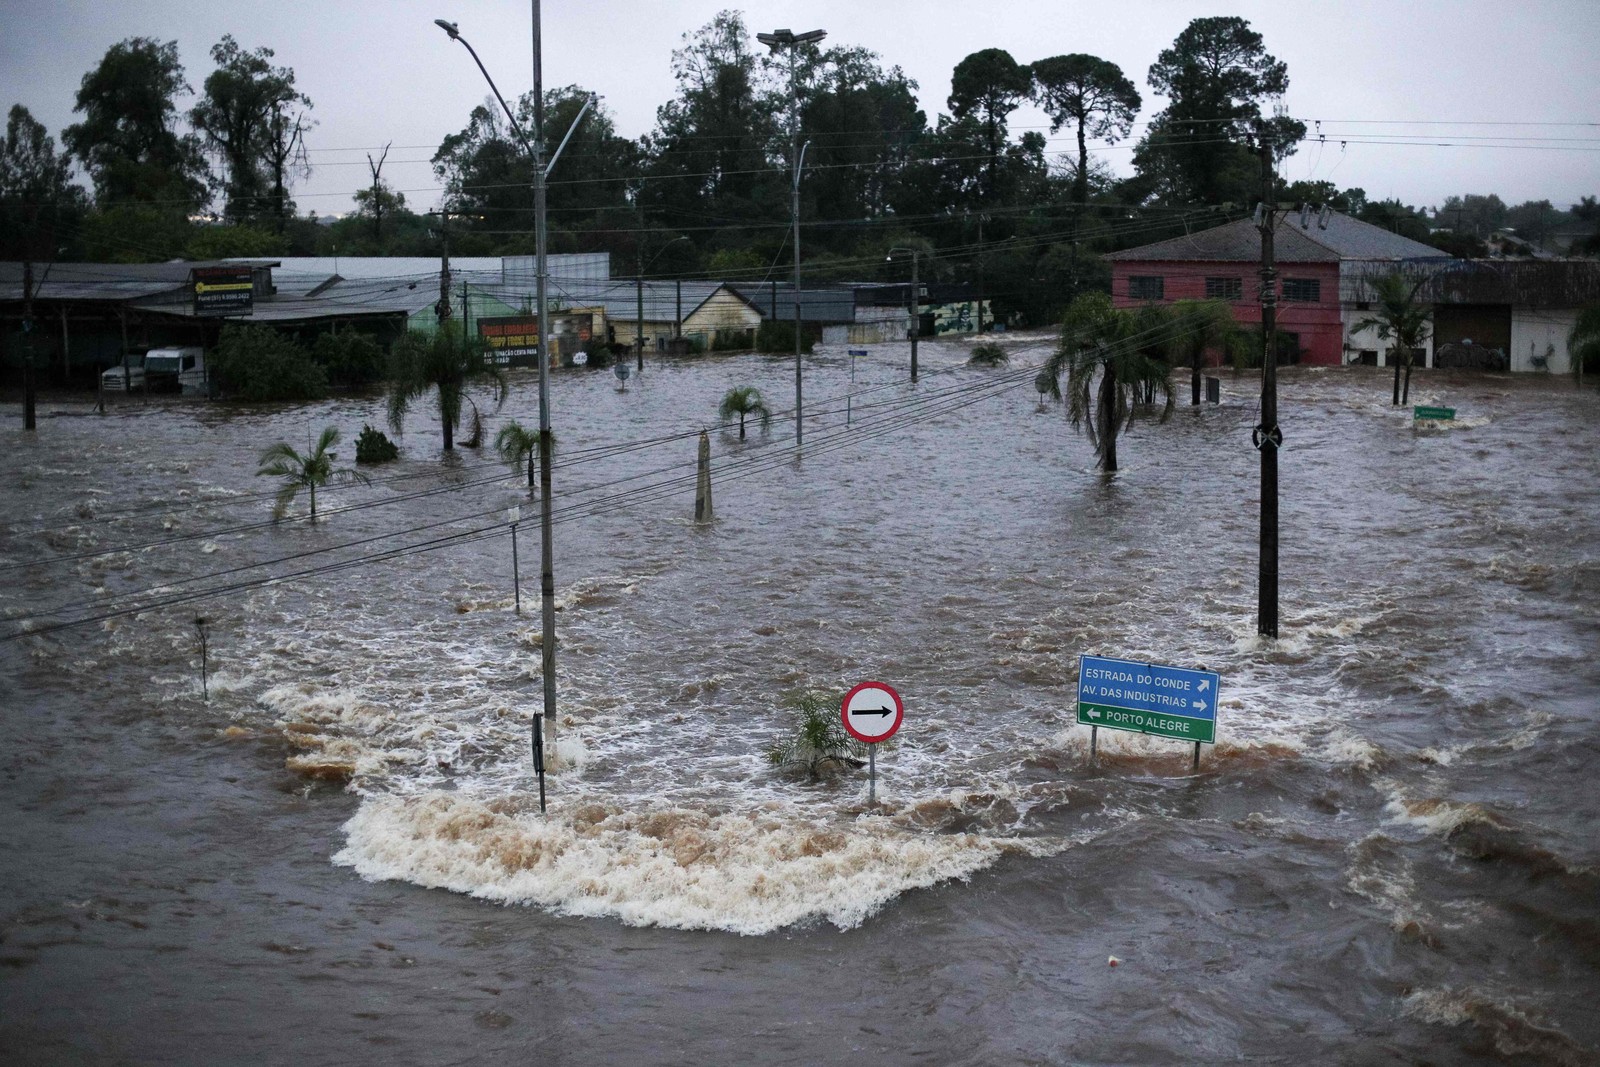 Casas afetadas pela enchente do rio Jacuí em Eldorado do Sul, Rio Grande do Sul. — Foto: Anselmo Cunha / AFP